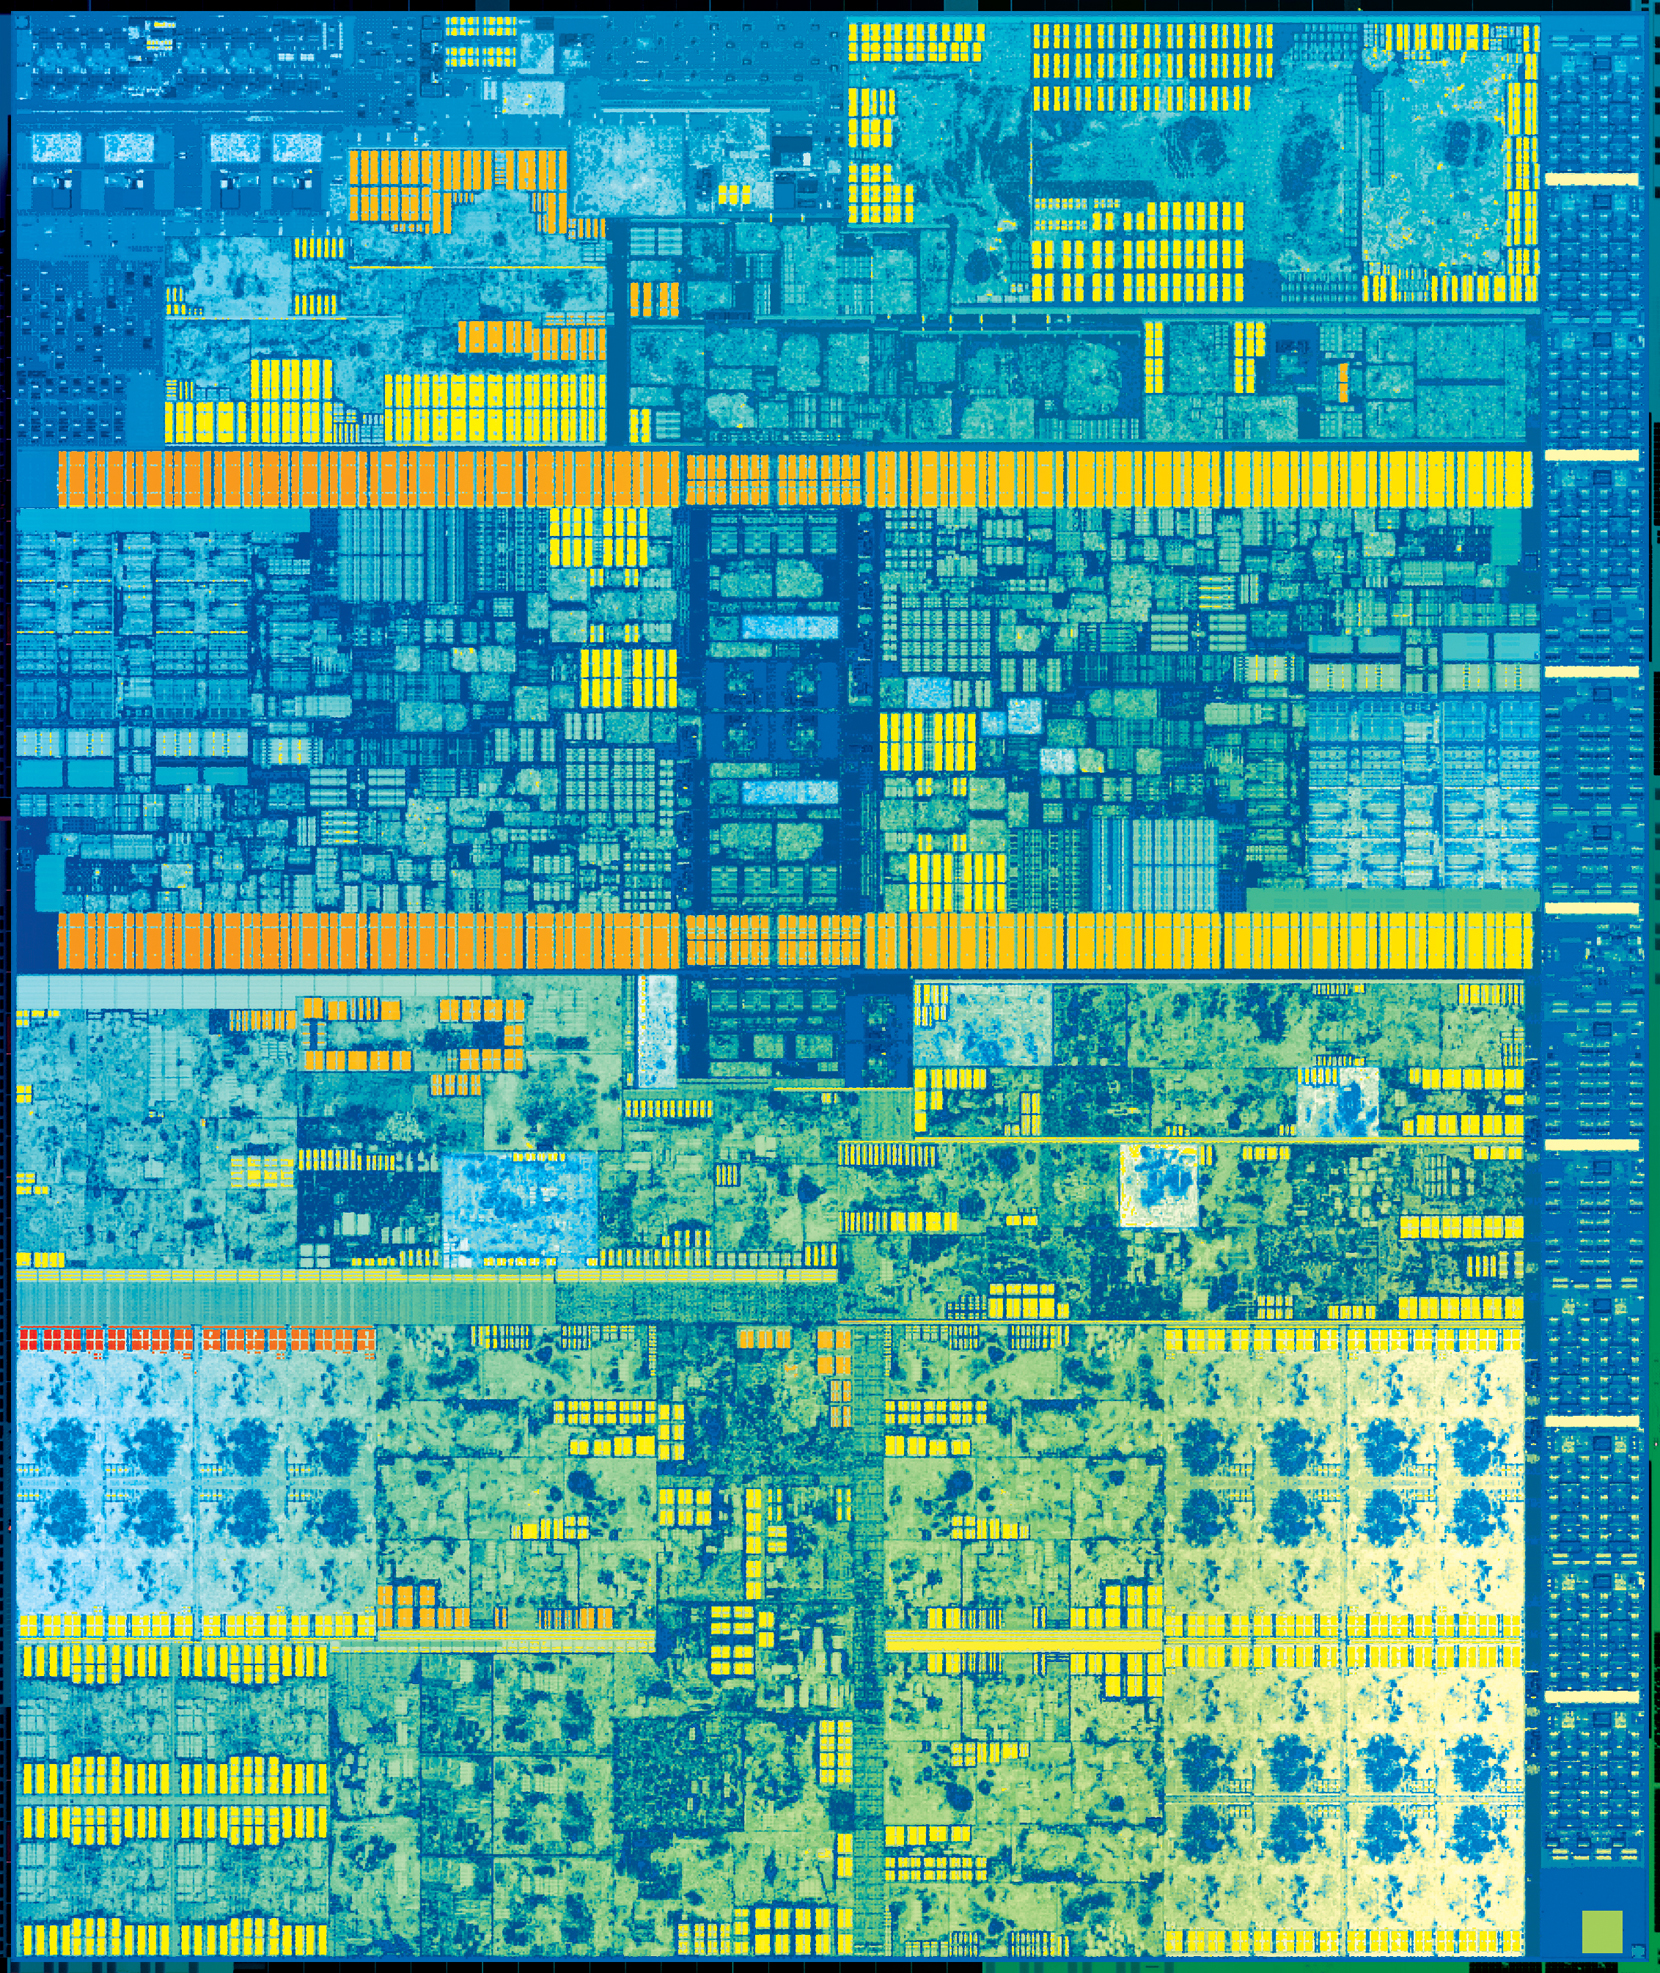 7th Gen Intel Core die – standard